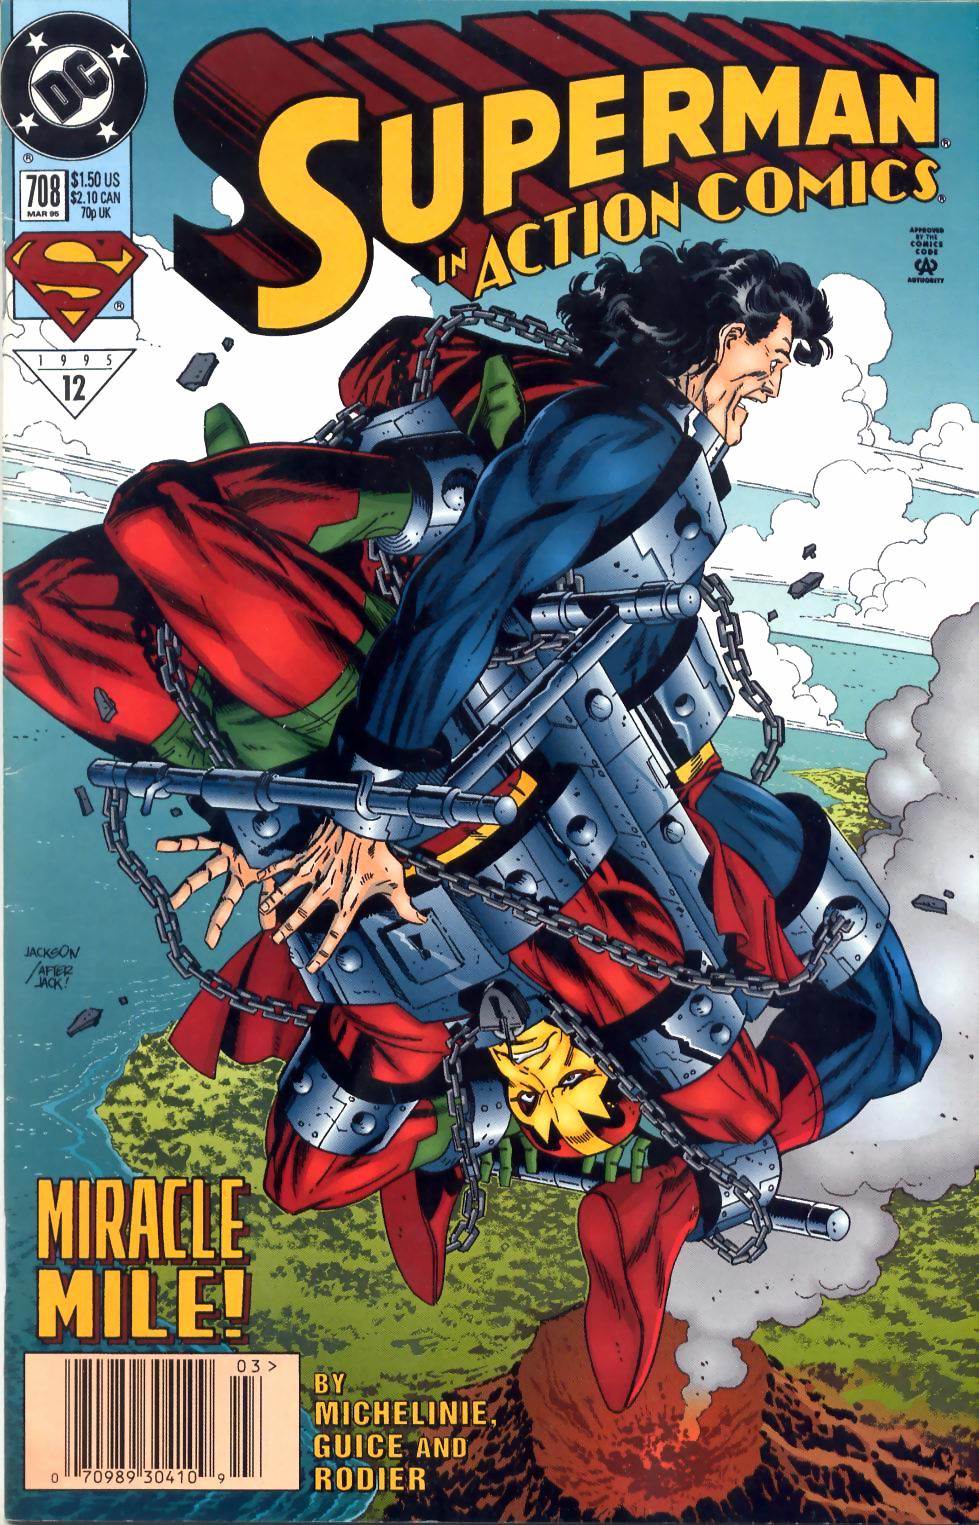 Action Comics Vol. 1 #708